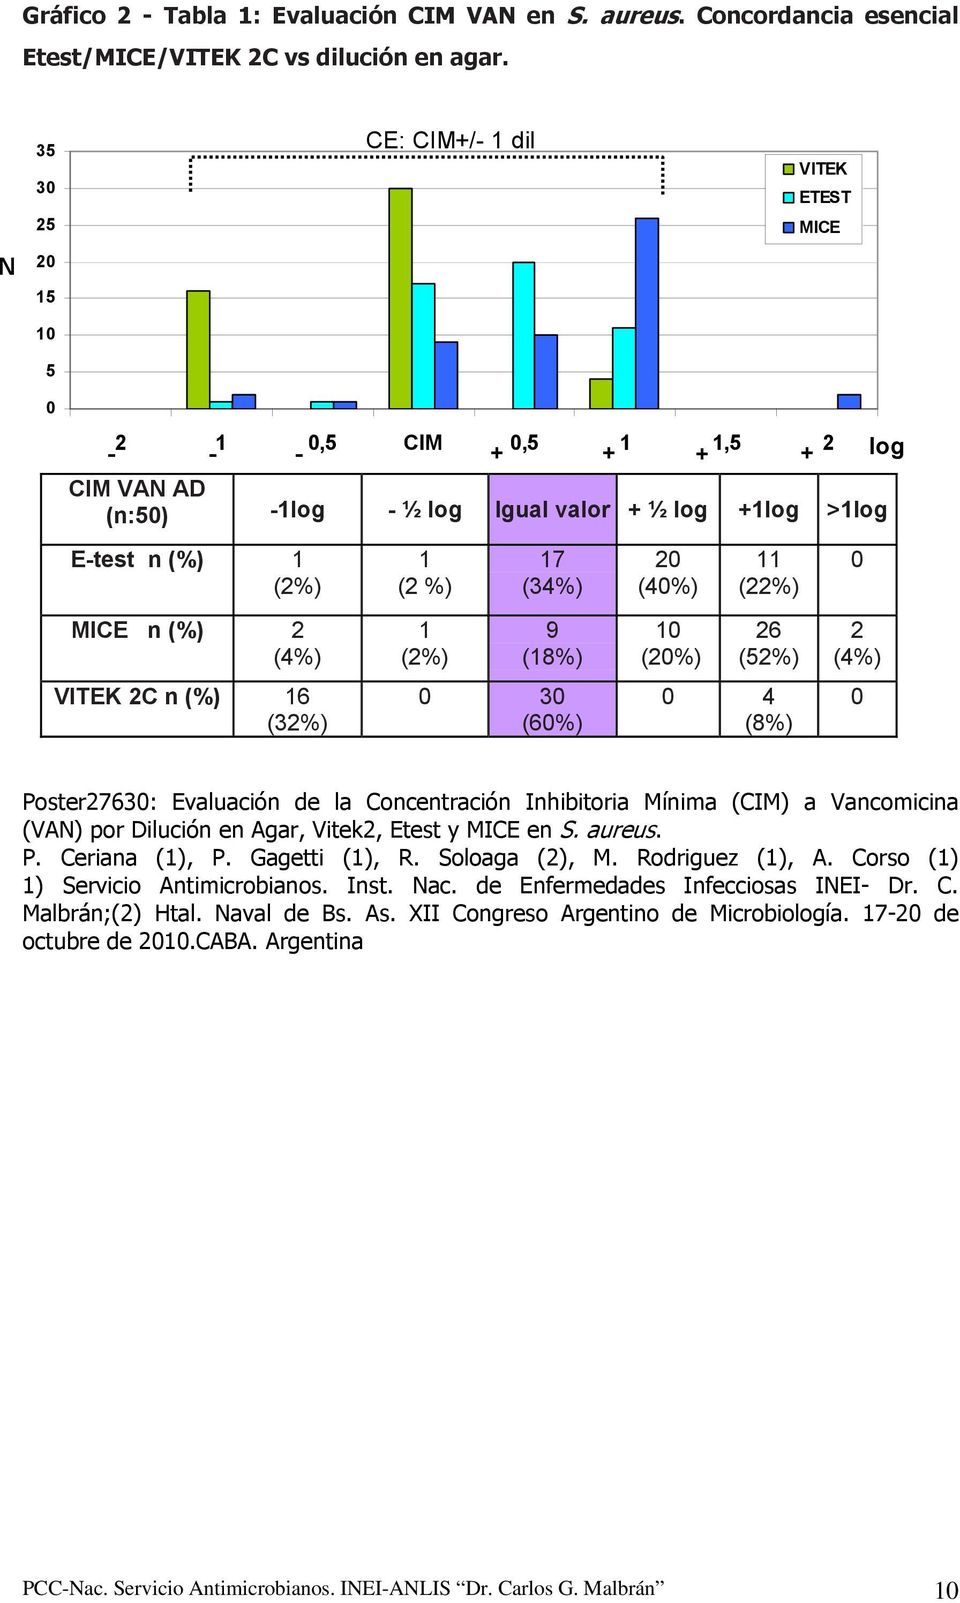 VITEK 2C n (%) 16 (32%) 1 (2 %) 1 (2%) 17 (34%) 9 (18%) 0 30 (60%) 20 (40%) 10 (20%) 11 (22%) 26 (52%) 0 4 (8%) 0 2 (4%) 0 log Poster27630: Evaluación de la Concentración Inhibitoria Mínima (CIM) a